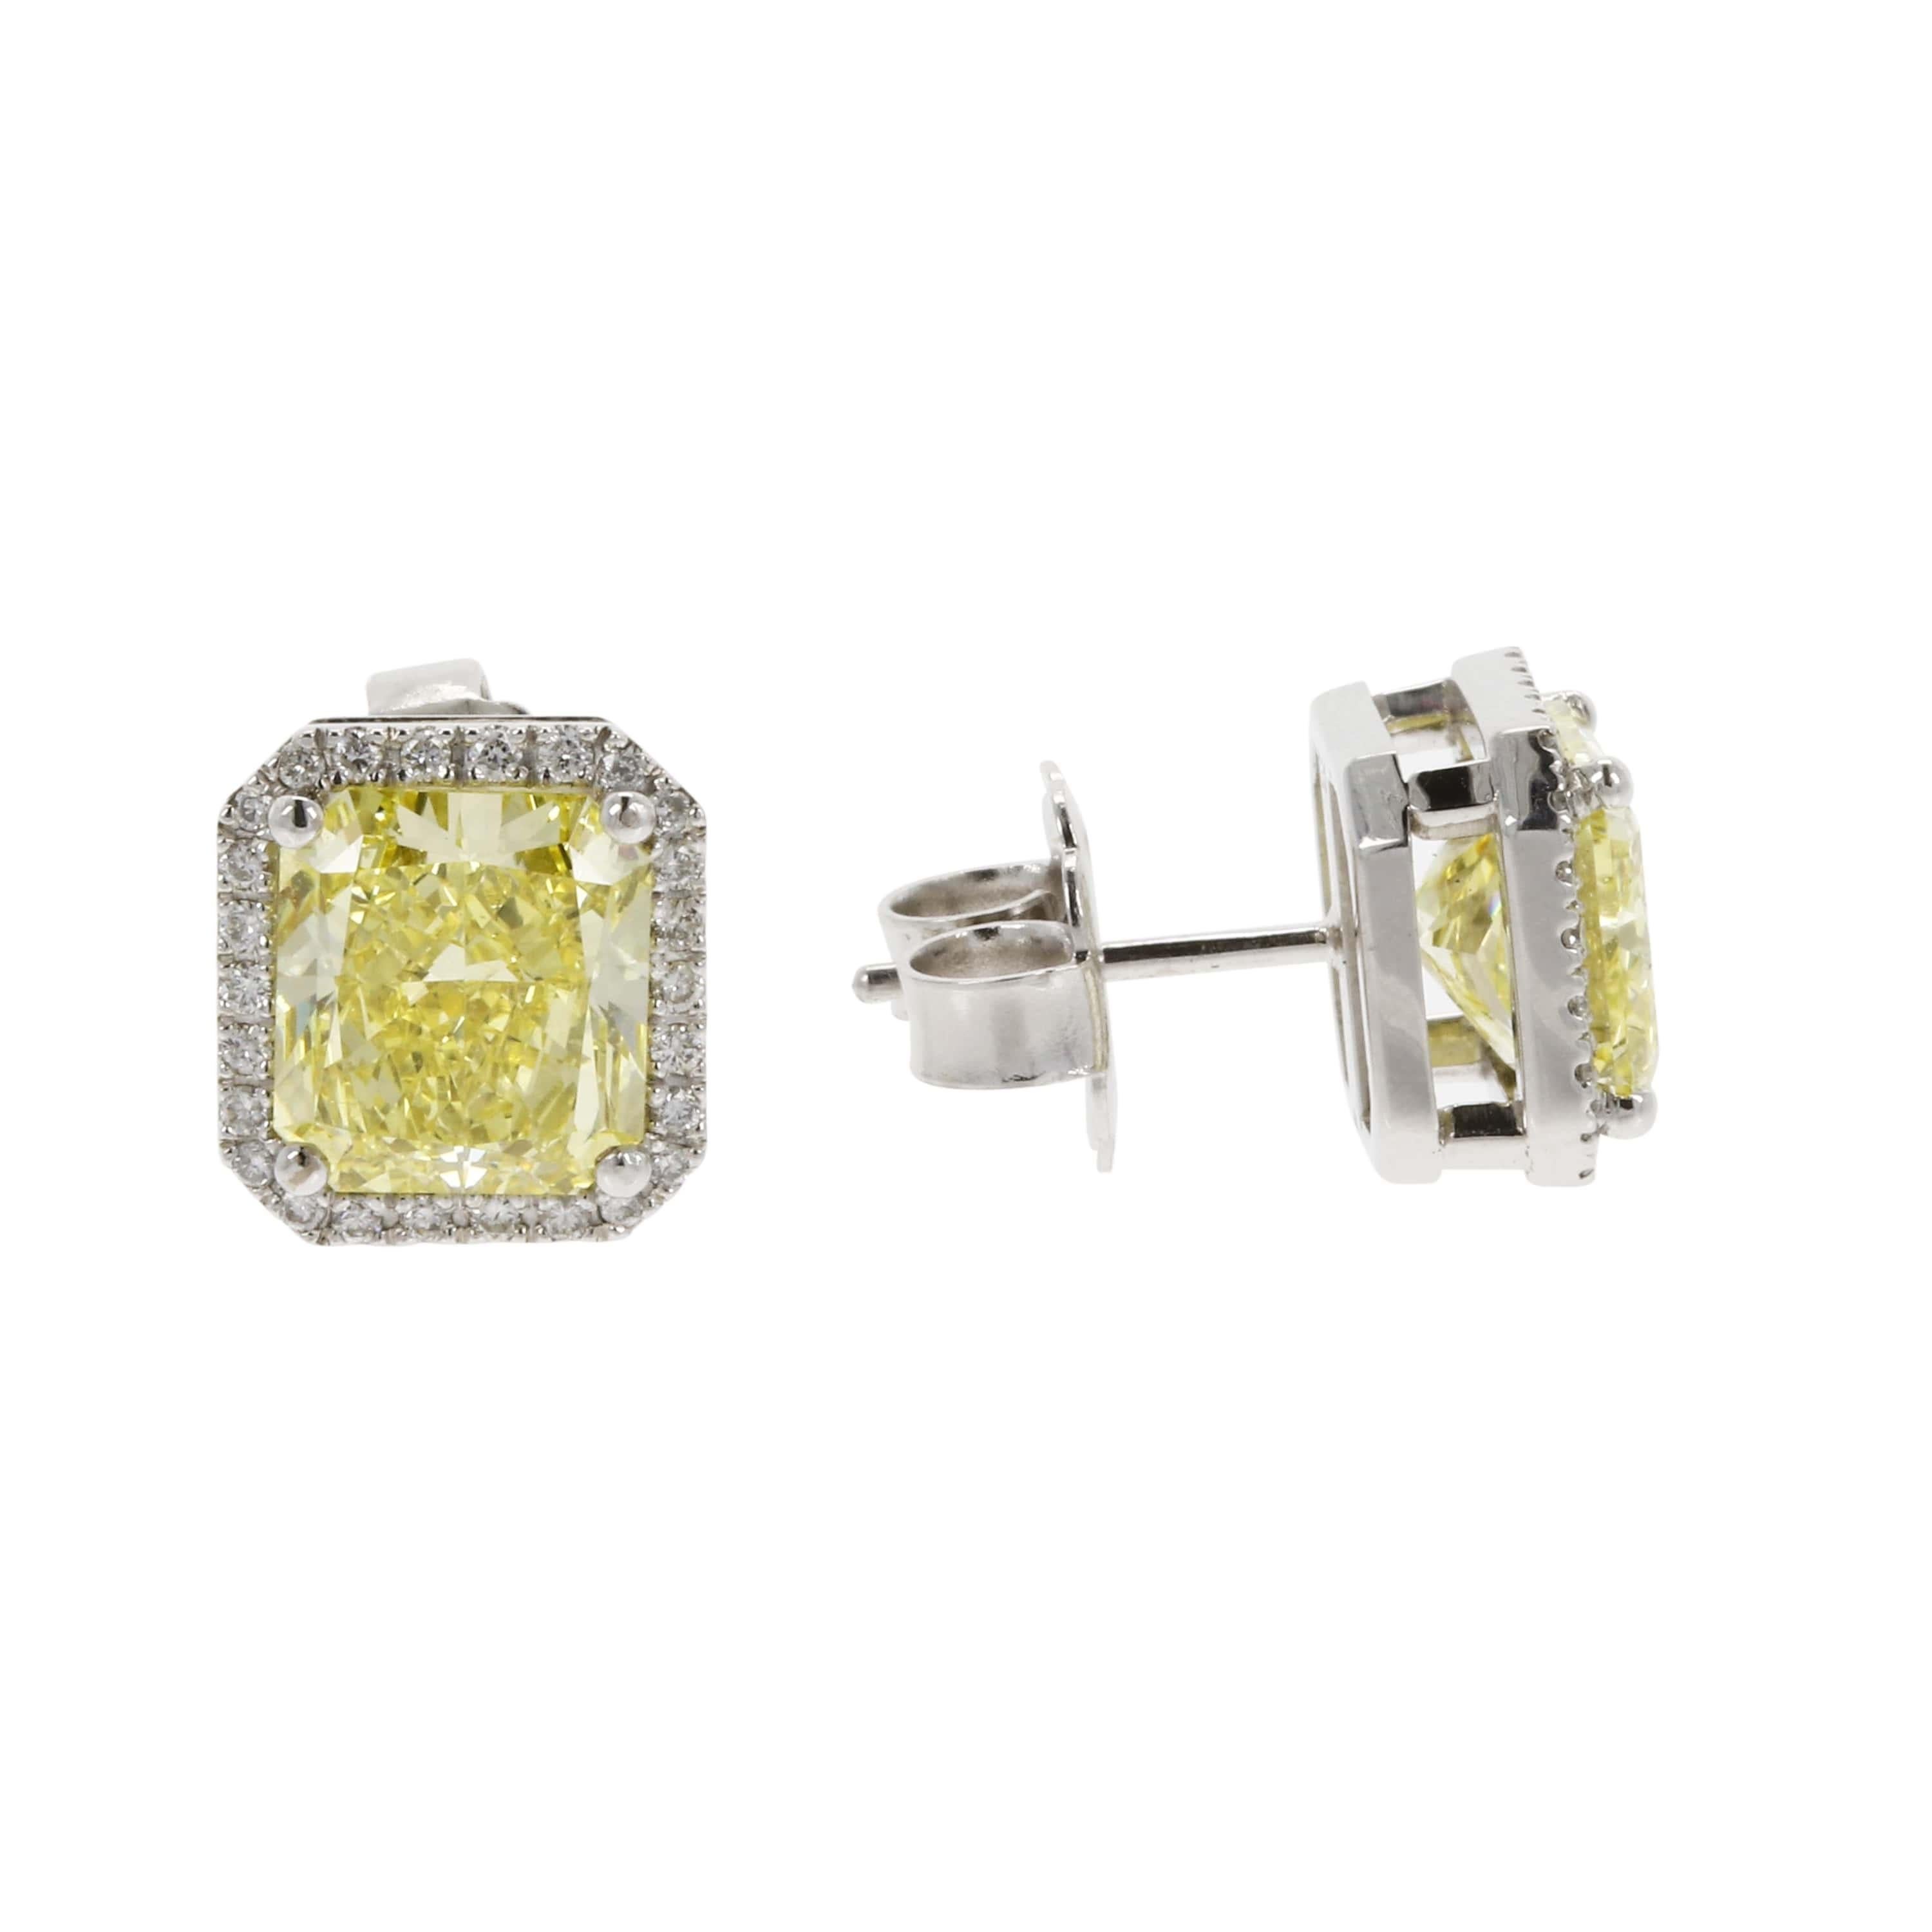 Radiant Cut GIA Certified Fancy Intense Yellow 3.52 3.41 Carat Diamond Stud Earrings For Sale